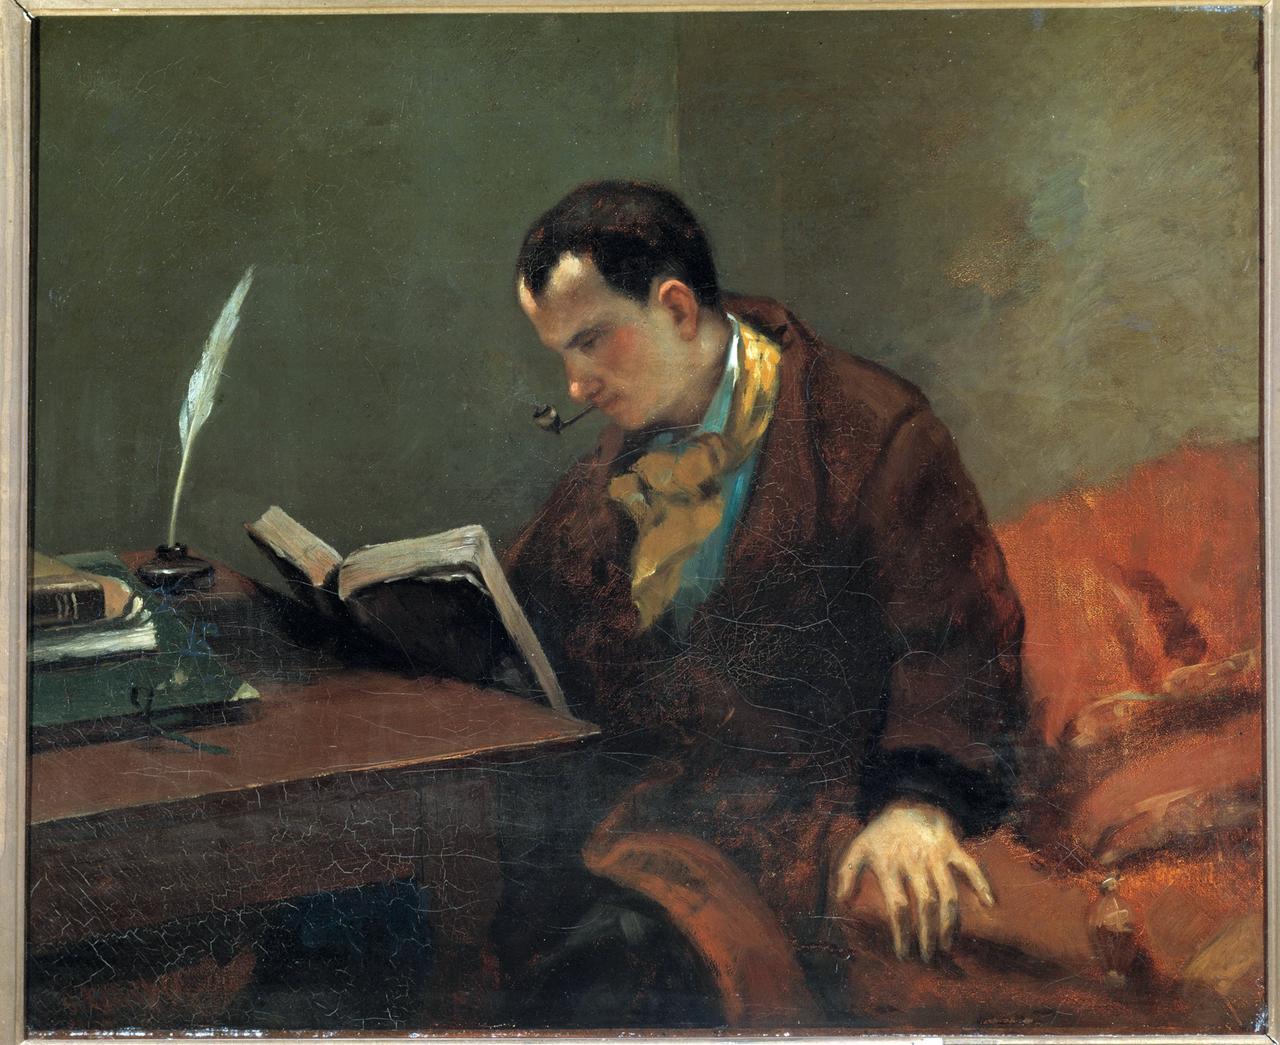 Ölgemälde von Charles Baudelaire, der allein an einem Tisch sitzt und in einem Buch liest.